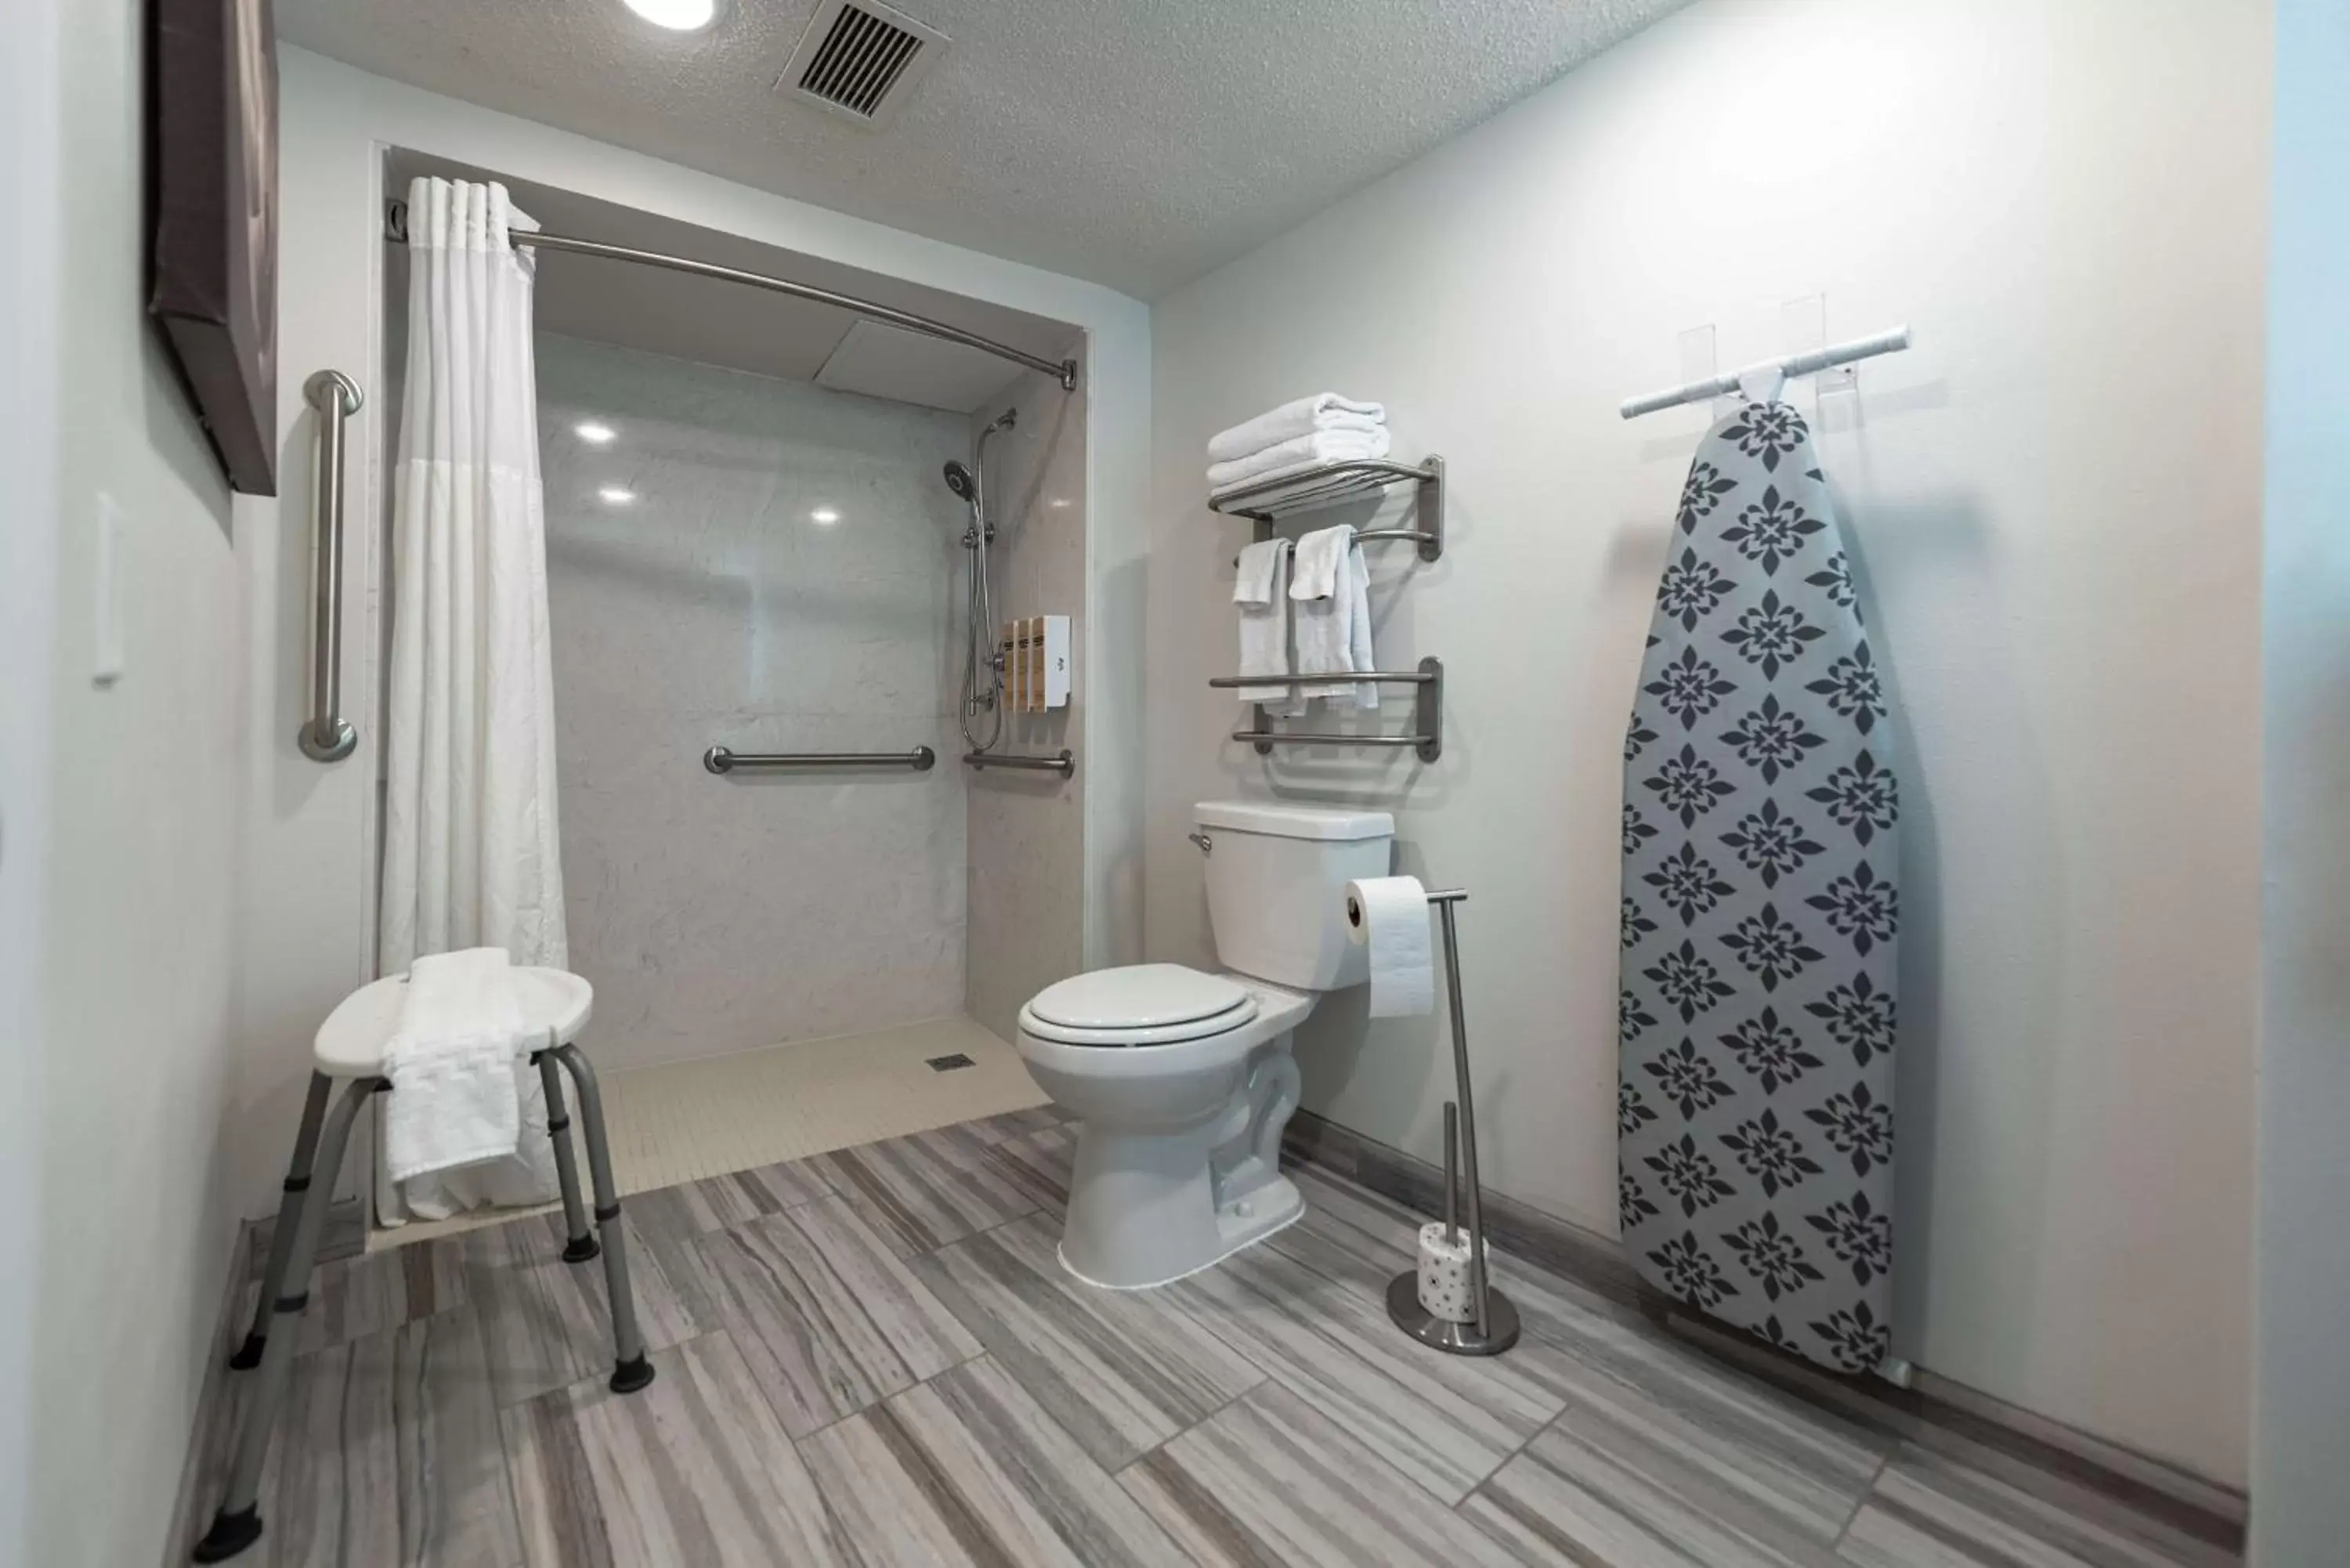 Bedroom, Bathroom in Best Western Plus Wausau Tower Inn